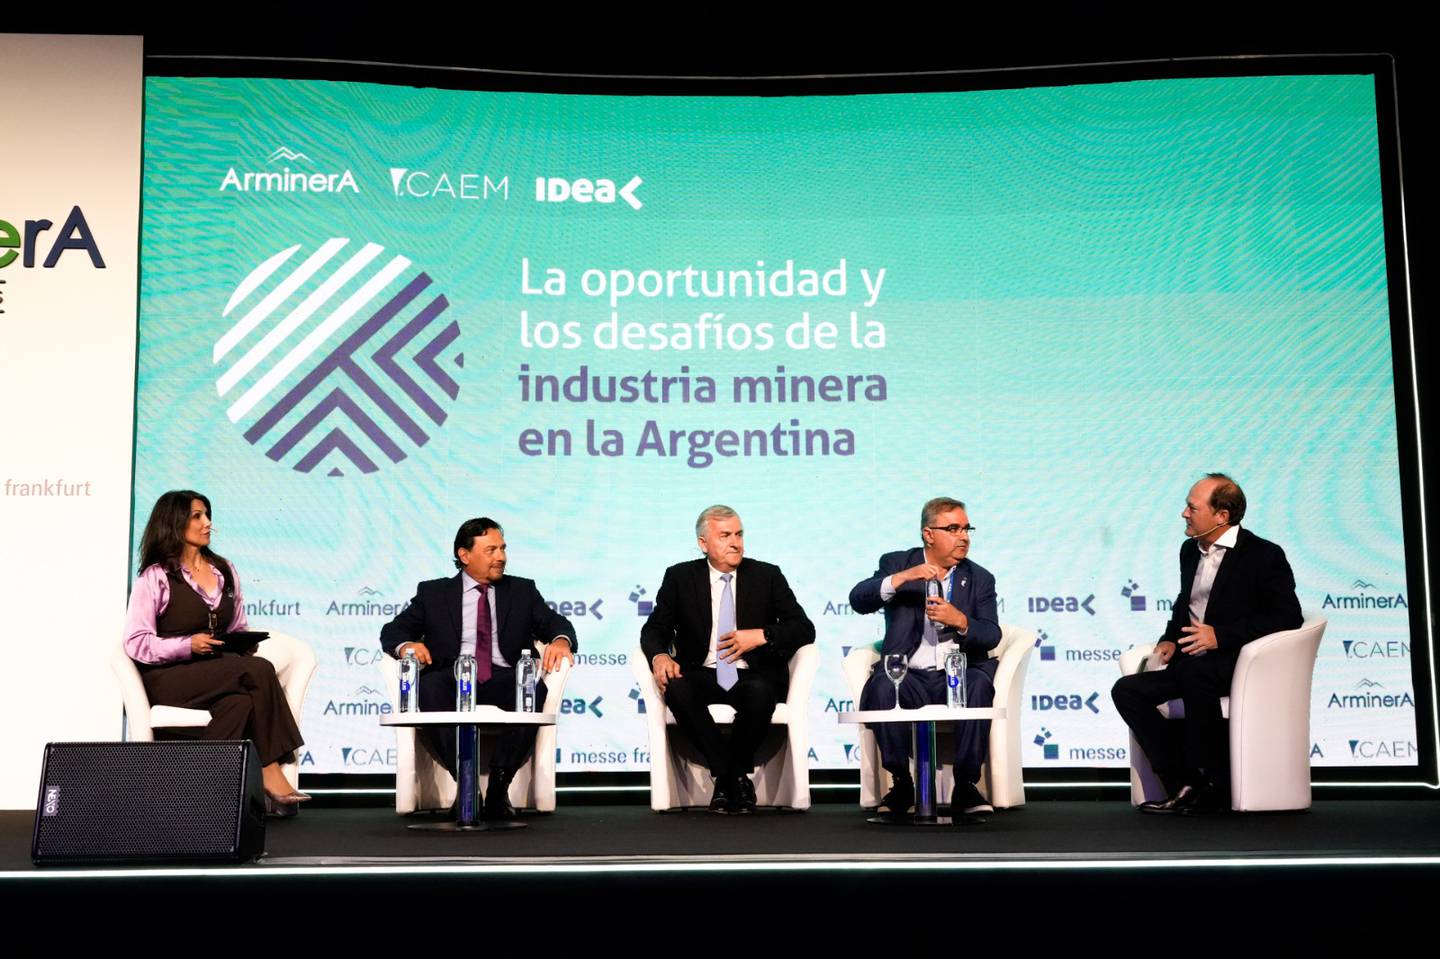 Gustavo Sáenz (Salta), Gerardo Morales (Jujuy) y Raúl Jalil (Catamarca) participaron de un evento de IDEA en la exposición Arminera